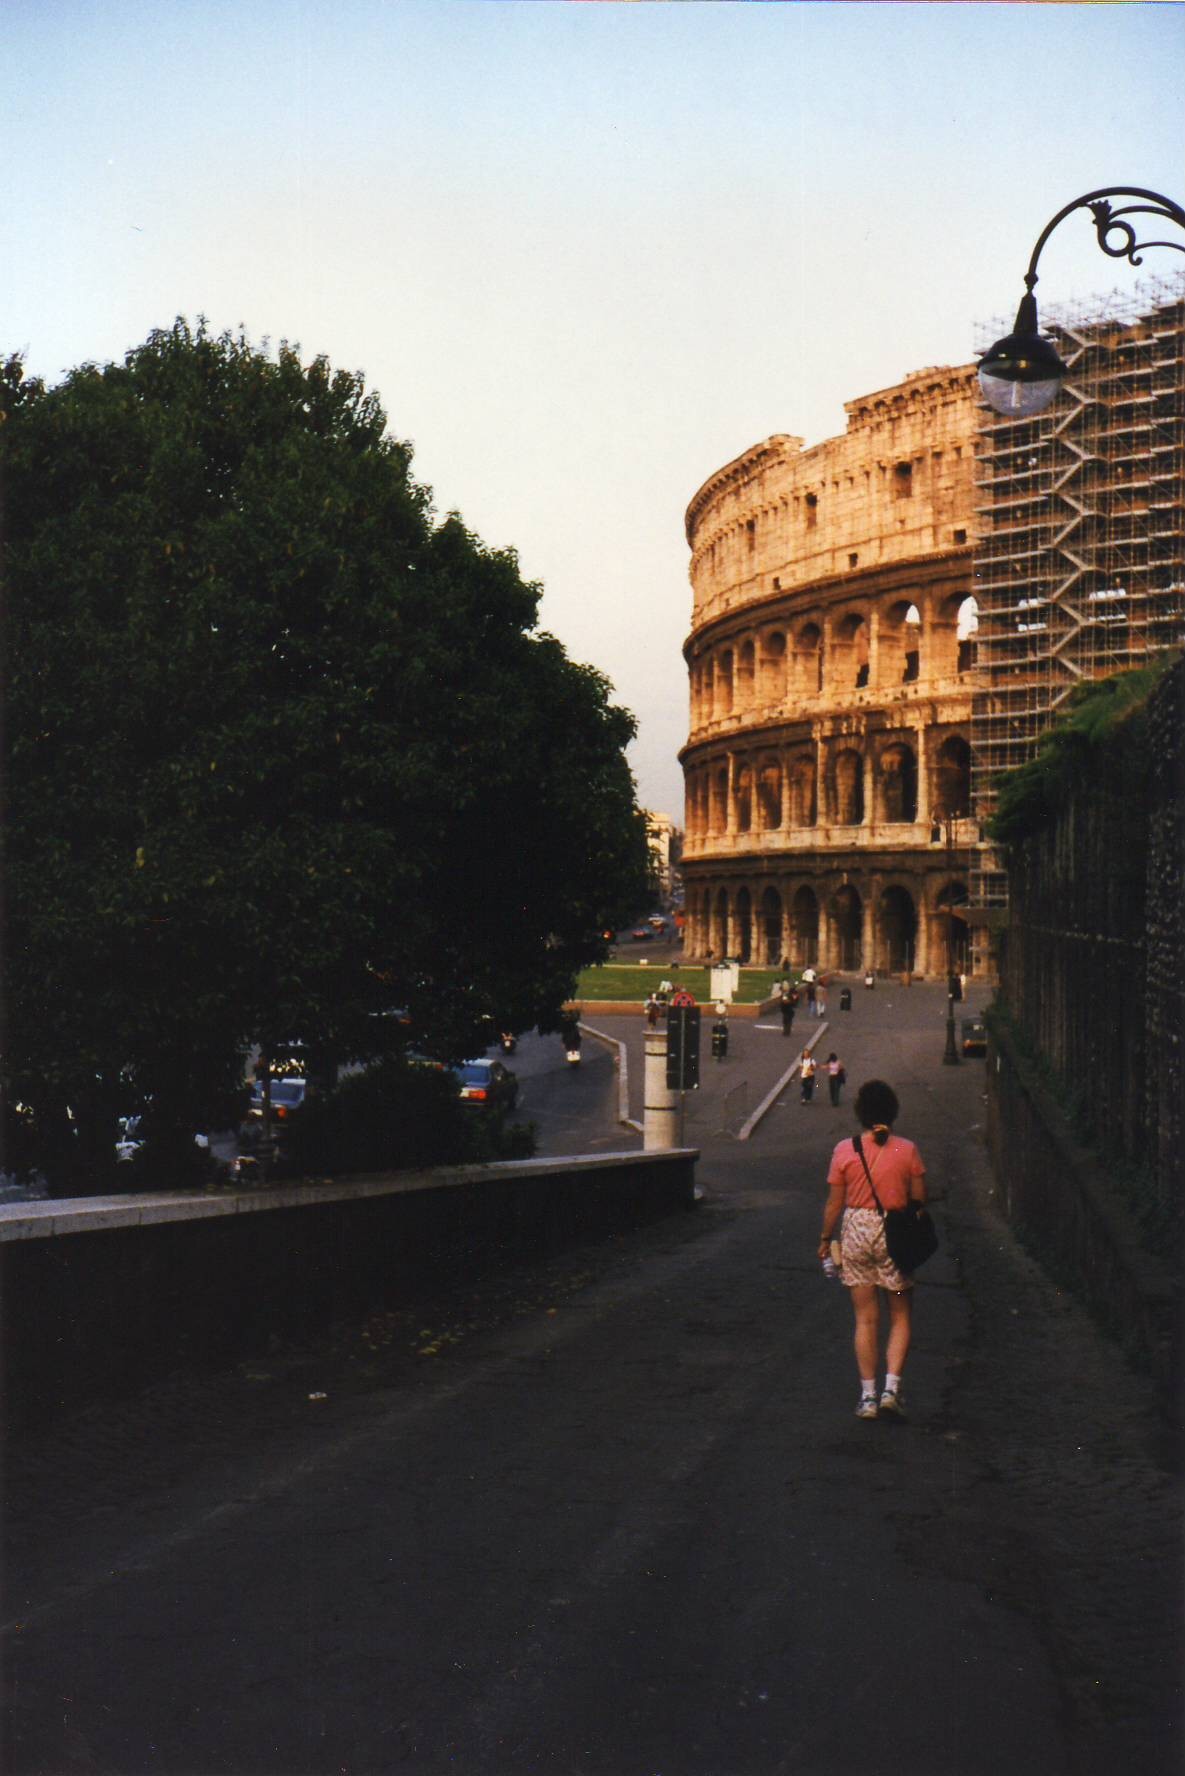 roman coliseum